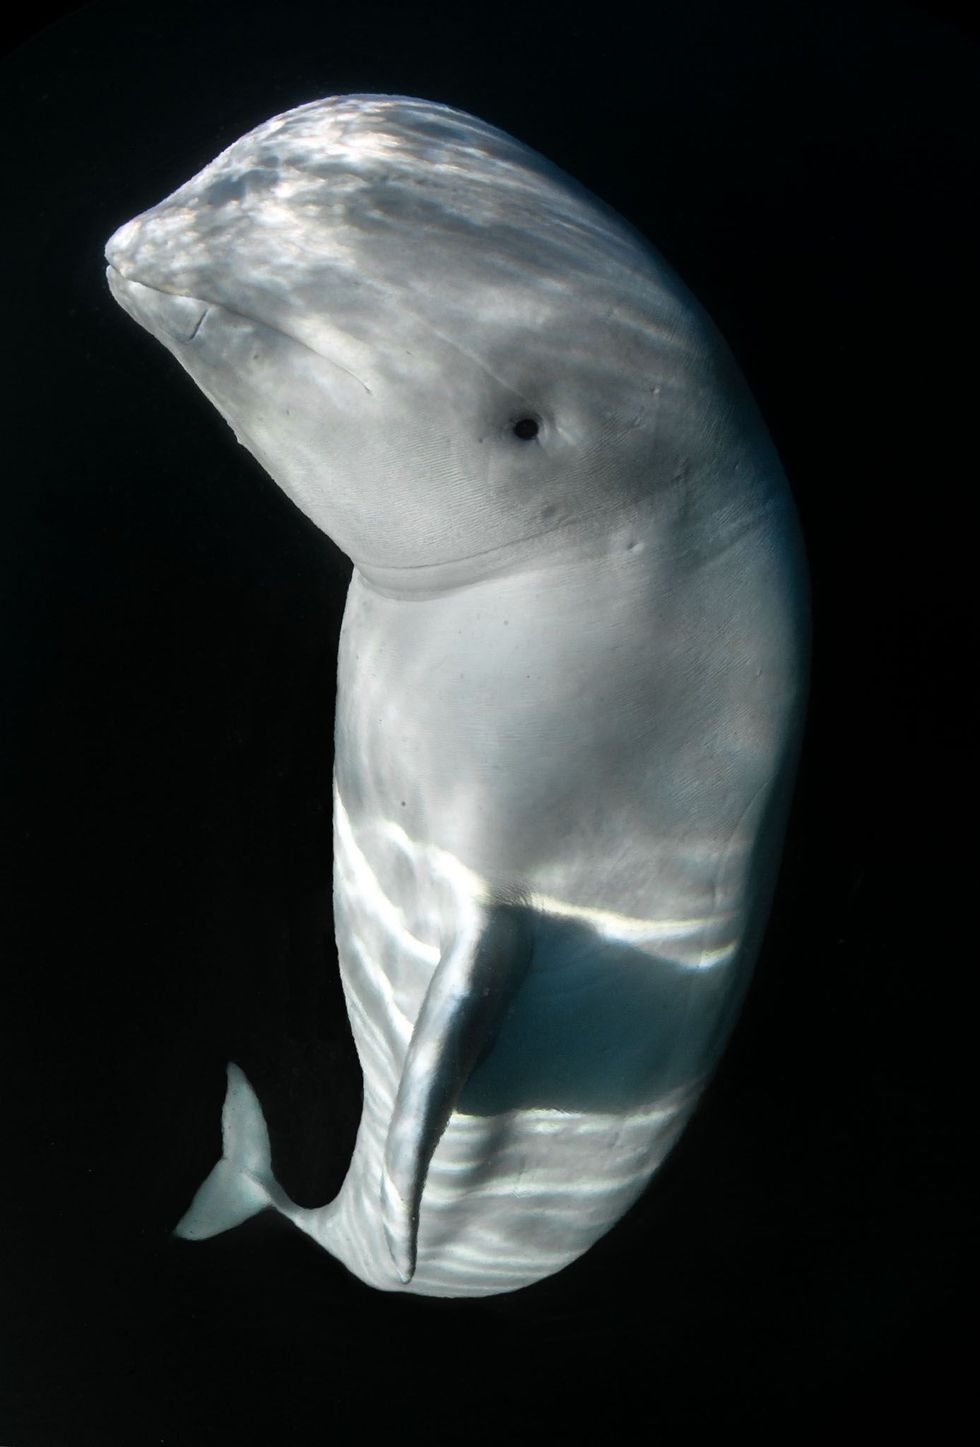 Fotograaf Audun Rikardsen slaagde erin dit onderwaterportret van Hvaldimir in Hammerfest te nemen toen hij van de kade wegzwom en door de witte dolfijn werd gevolgd